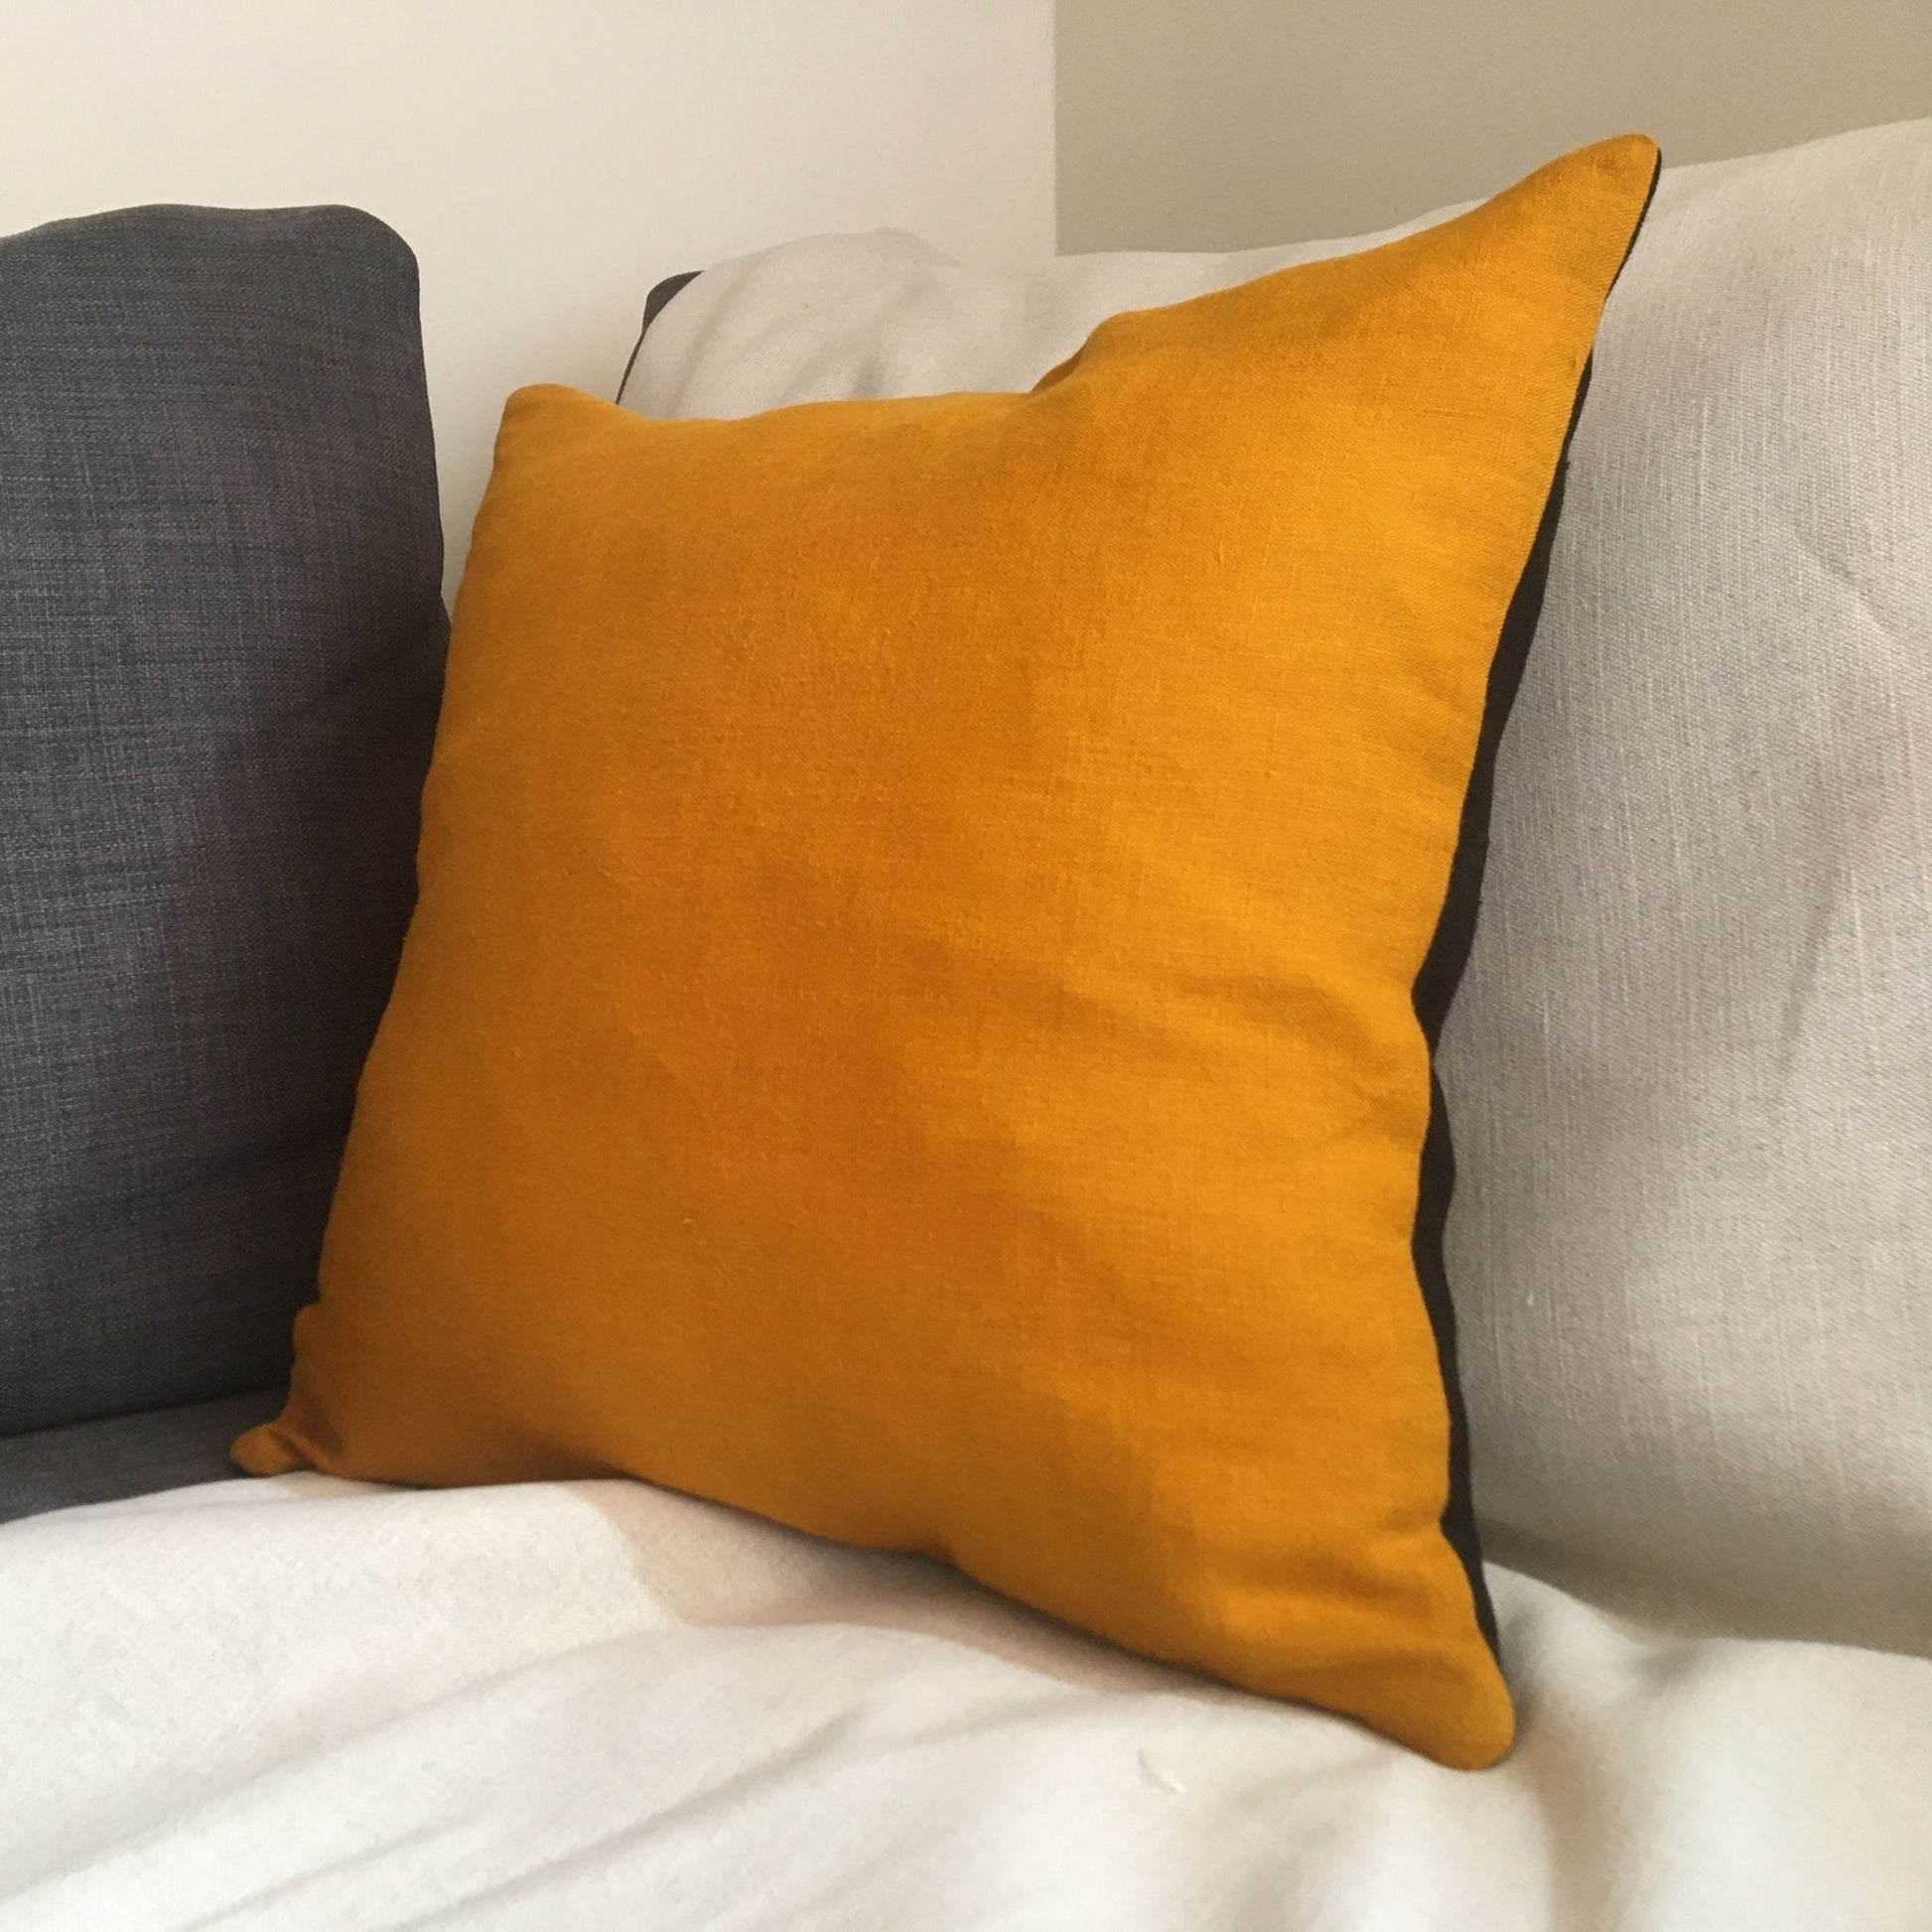 Bee cushion on grey sofa